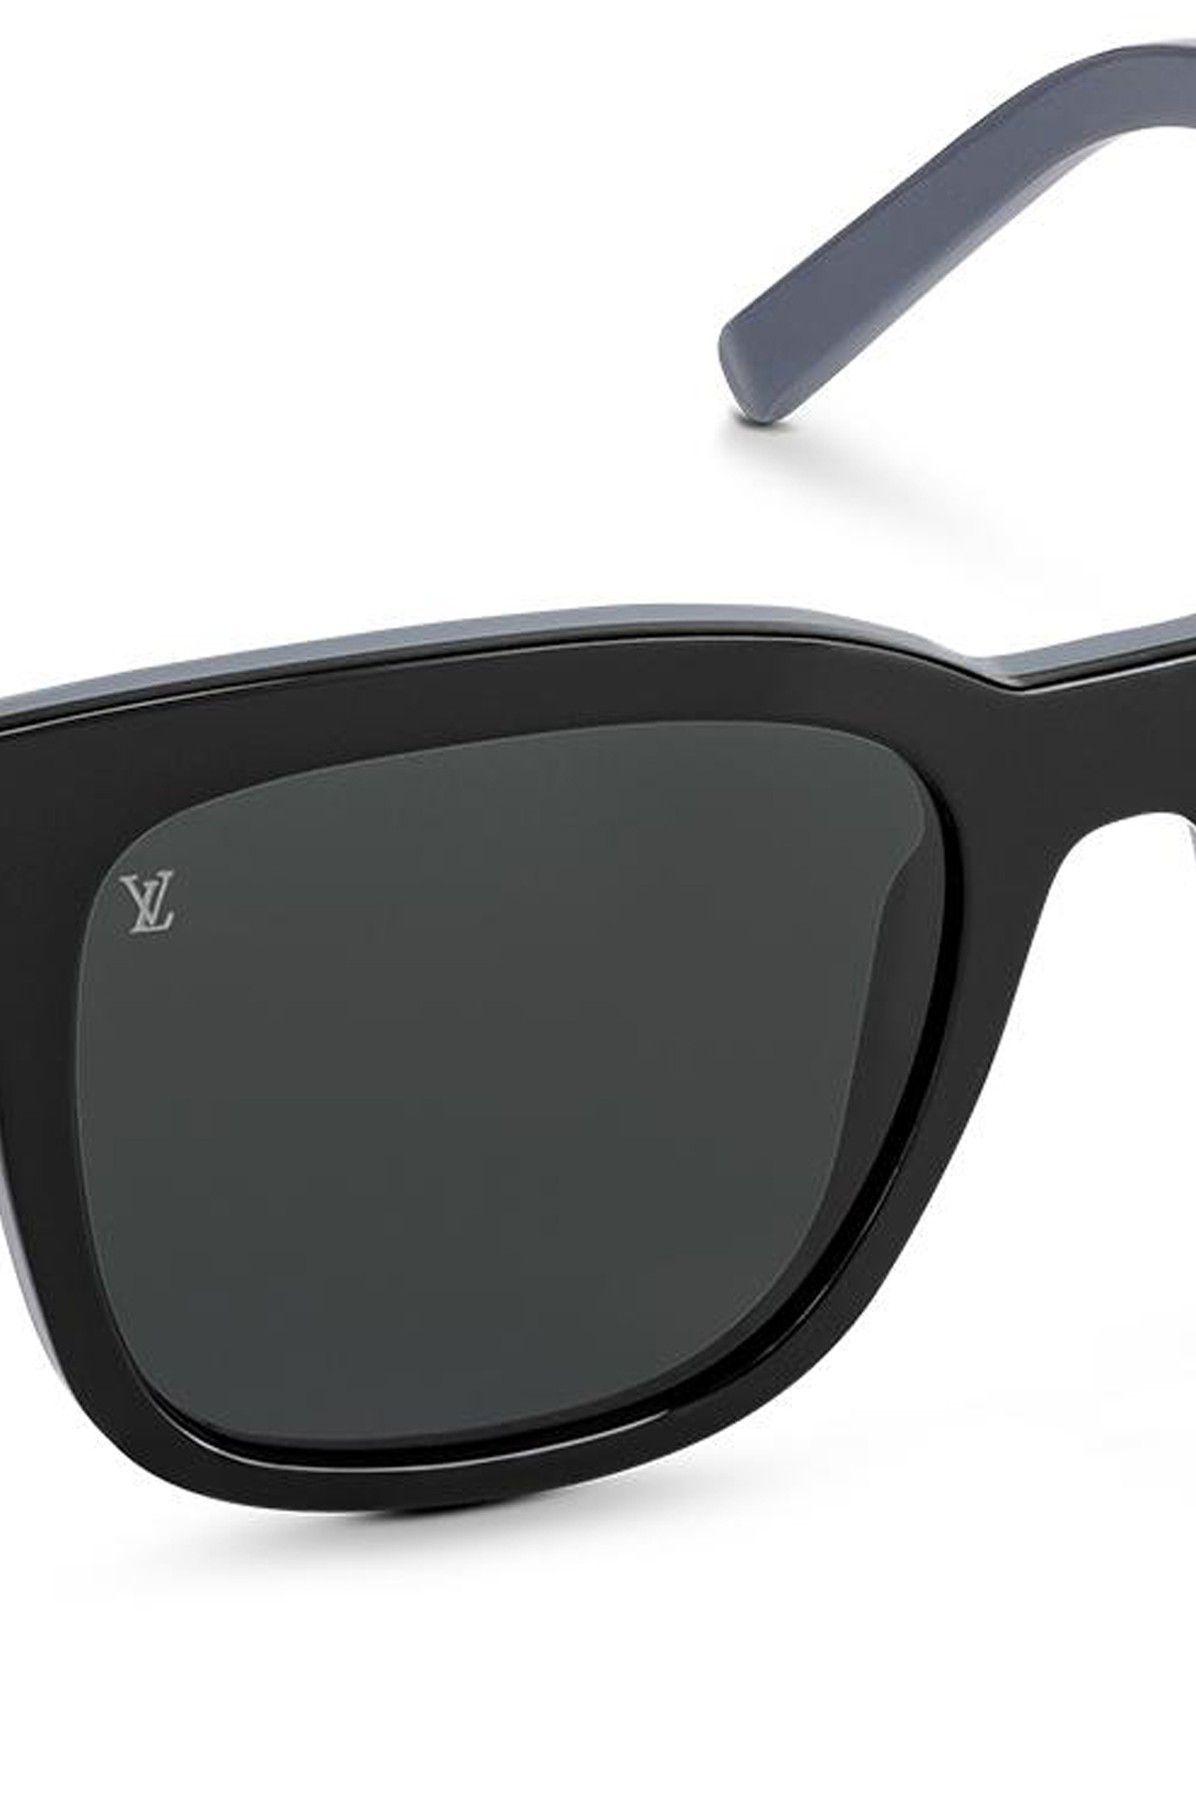 Louis Vuitton New Men's Sunglasses Hut